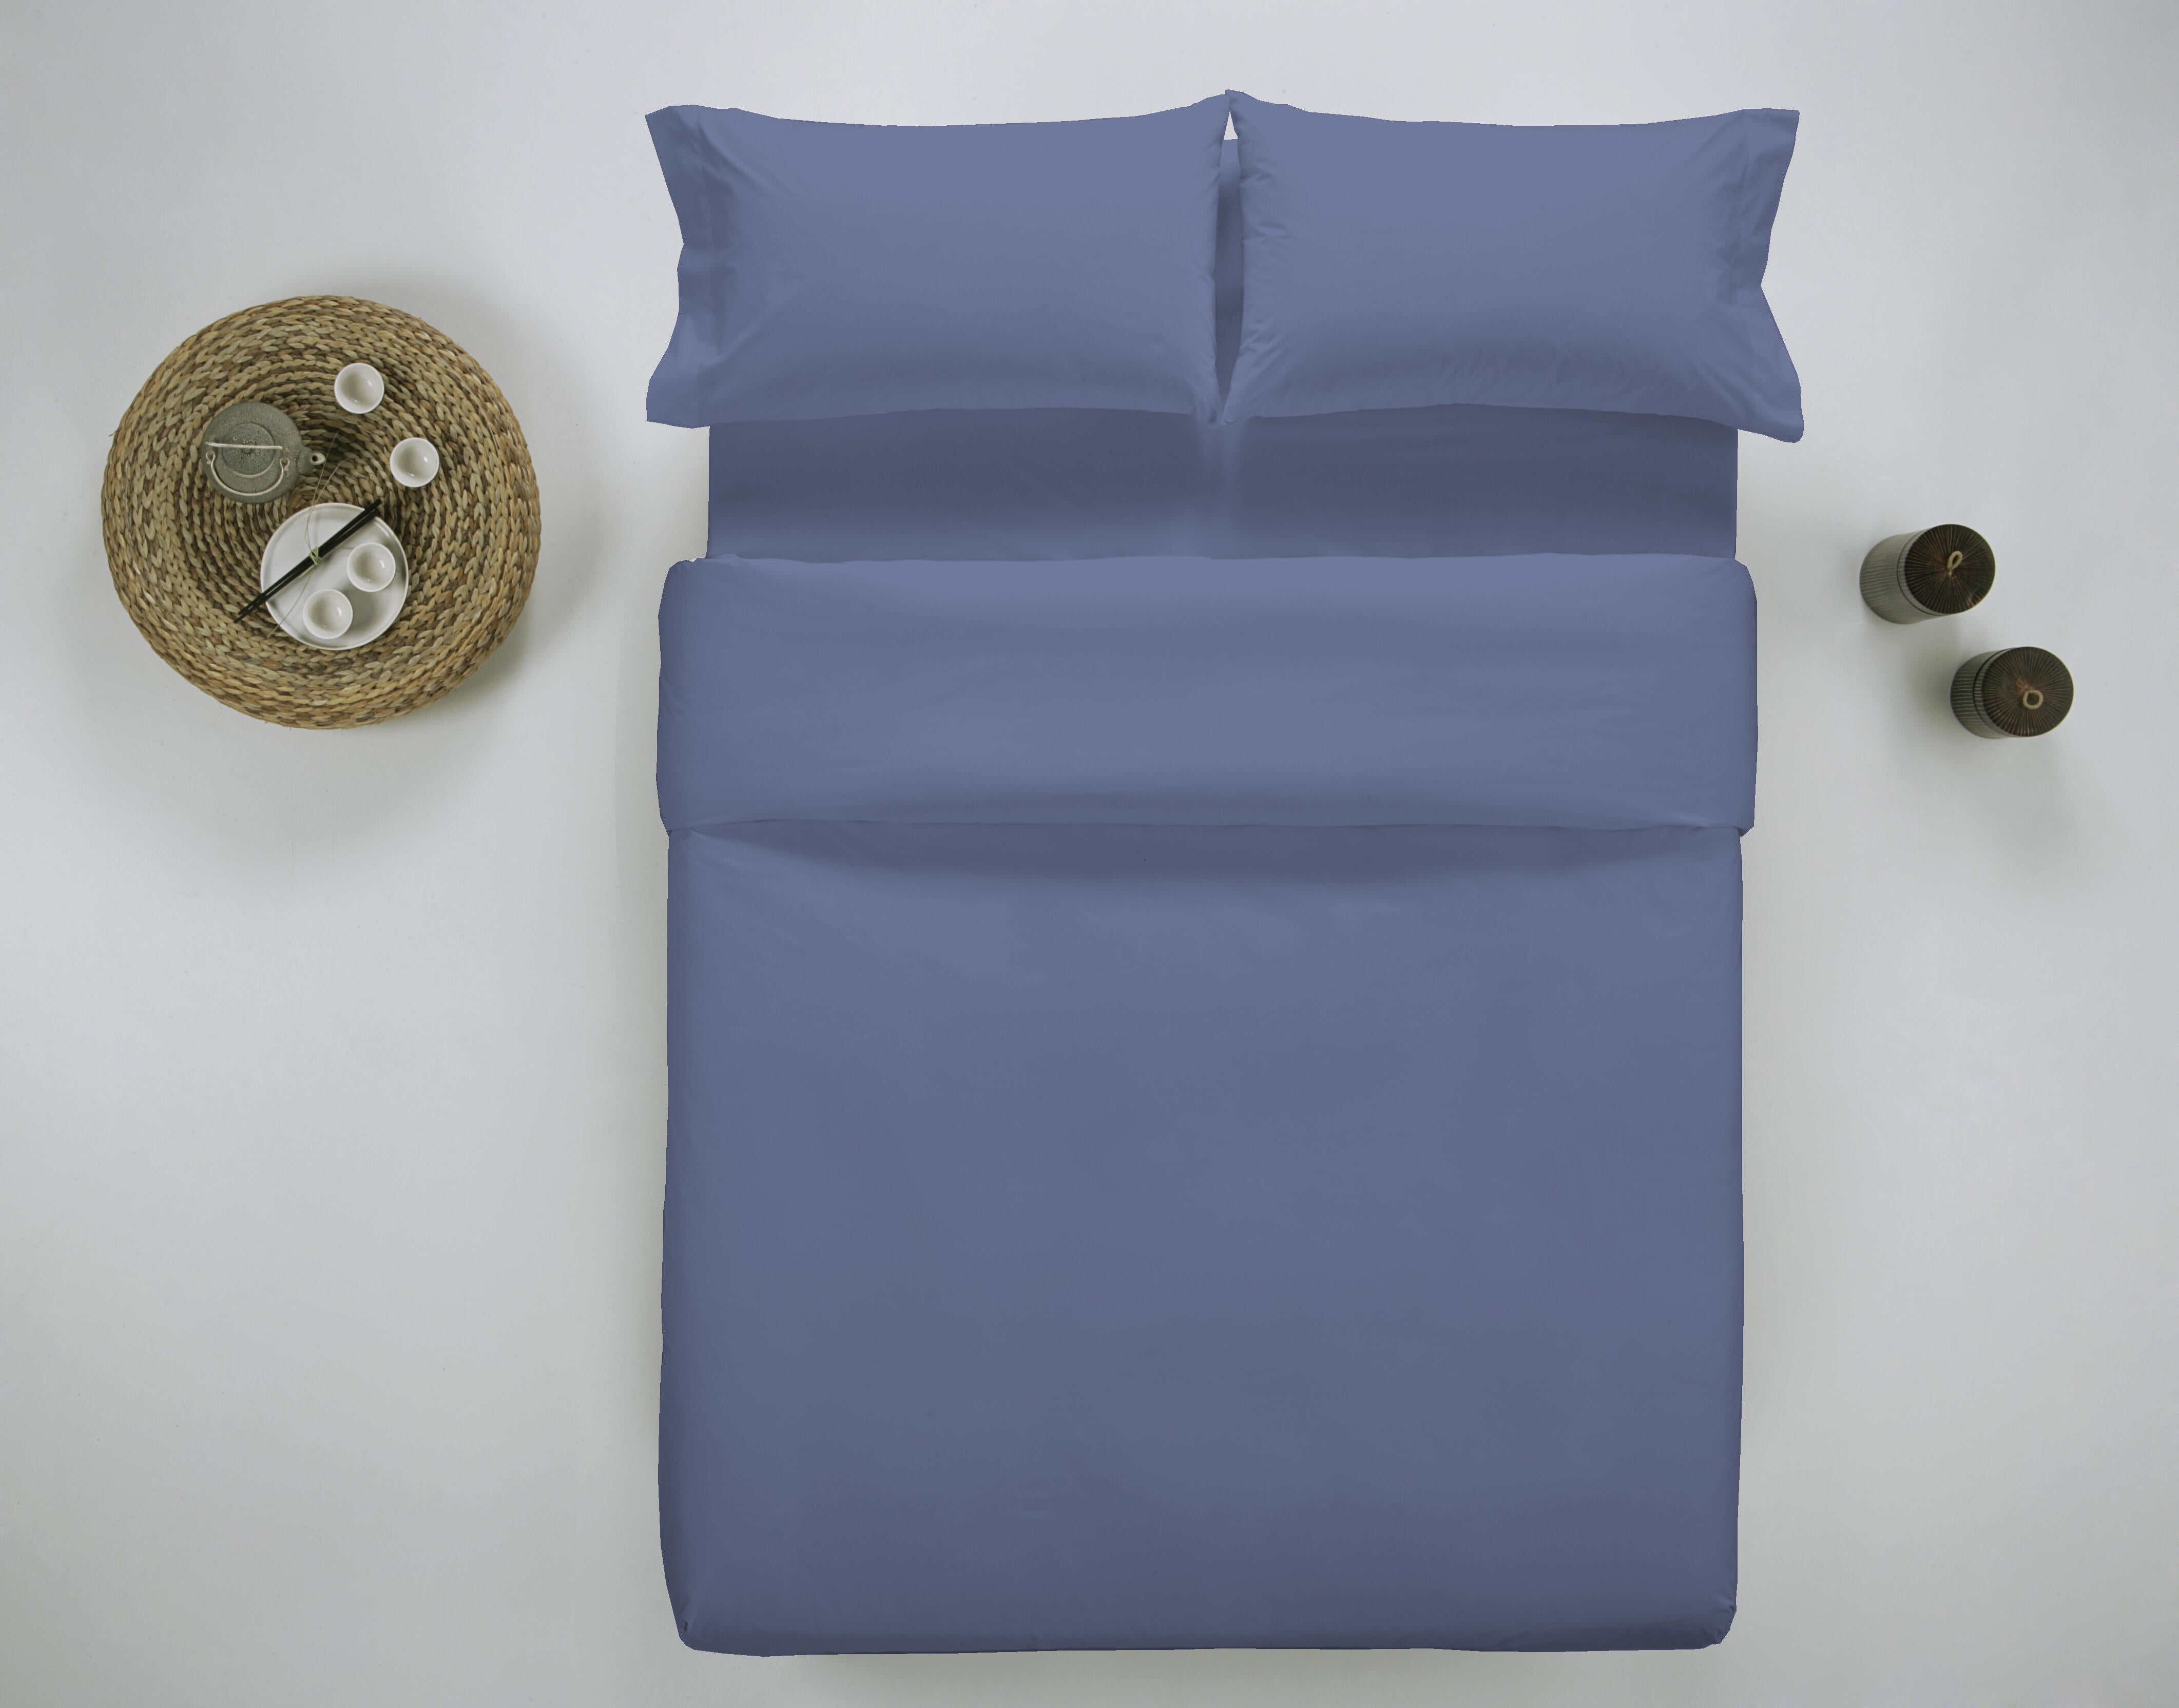 Funda nórdica wash grament lisa algodón 200 hilos violeta blueberry cama 180 cm